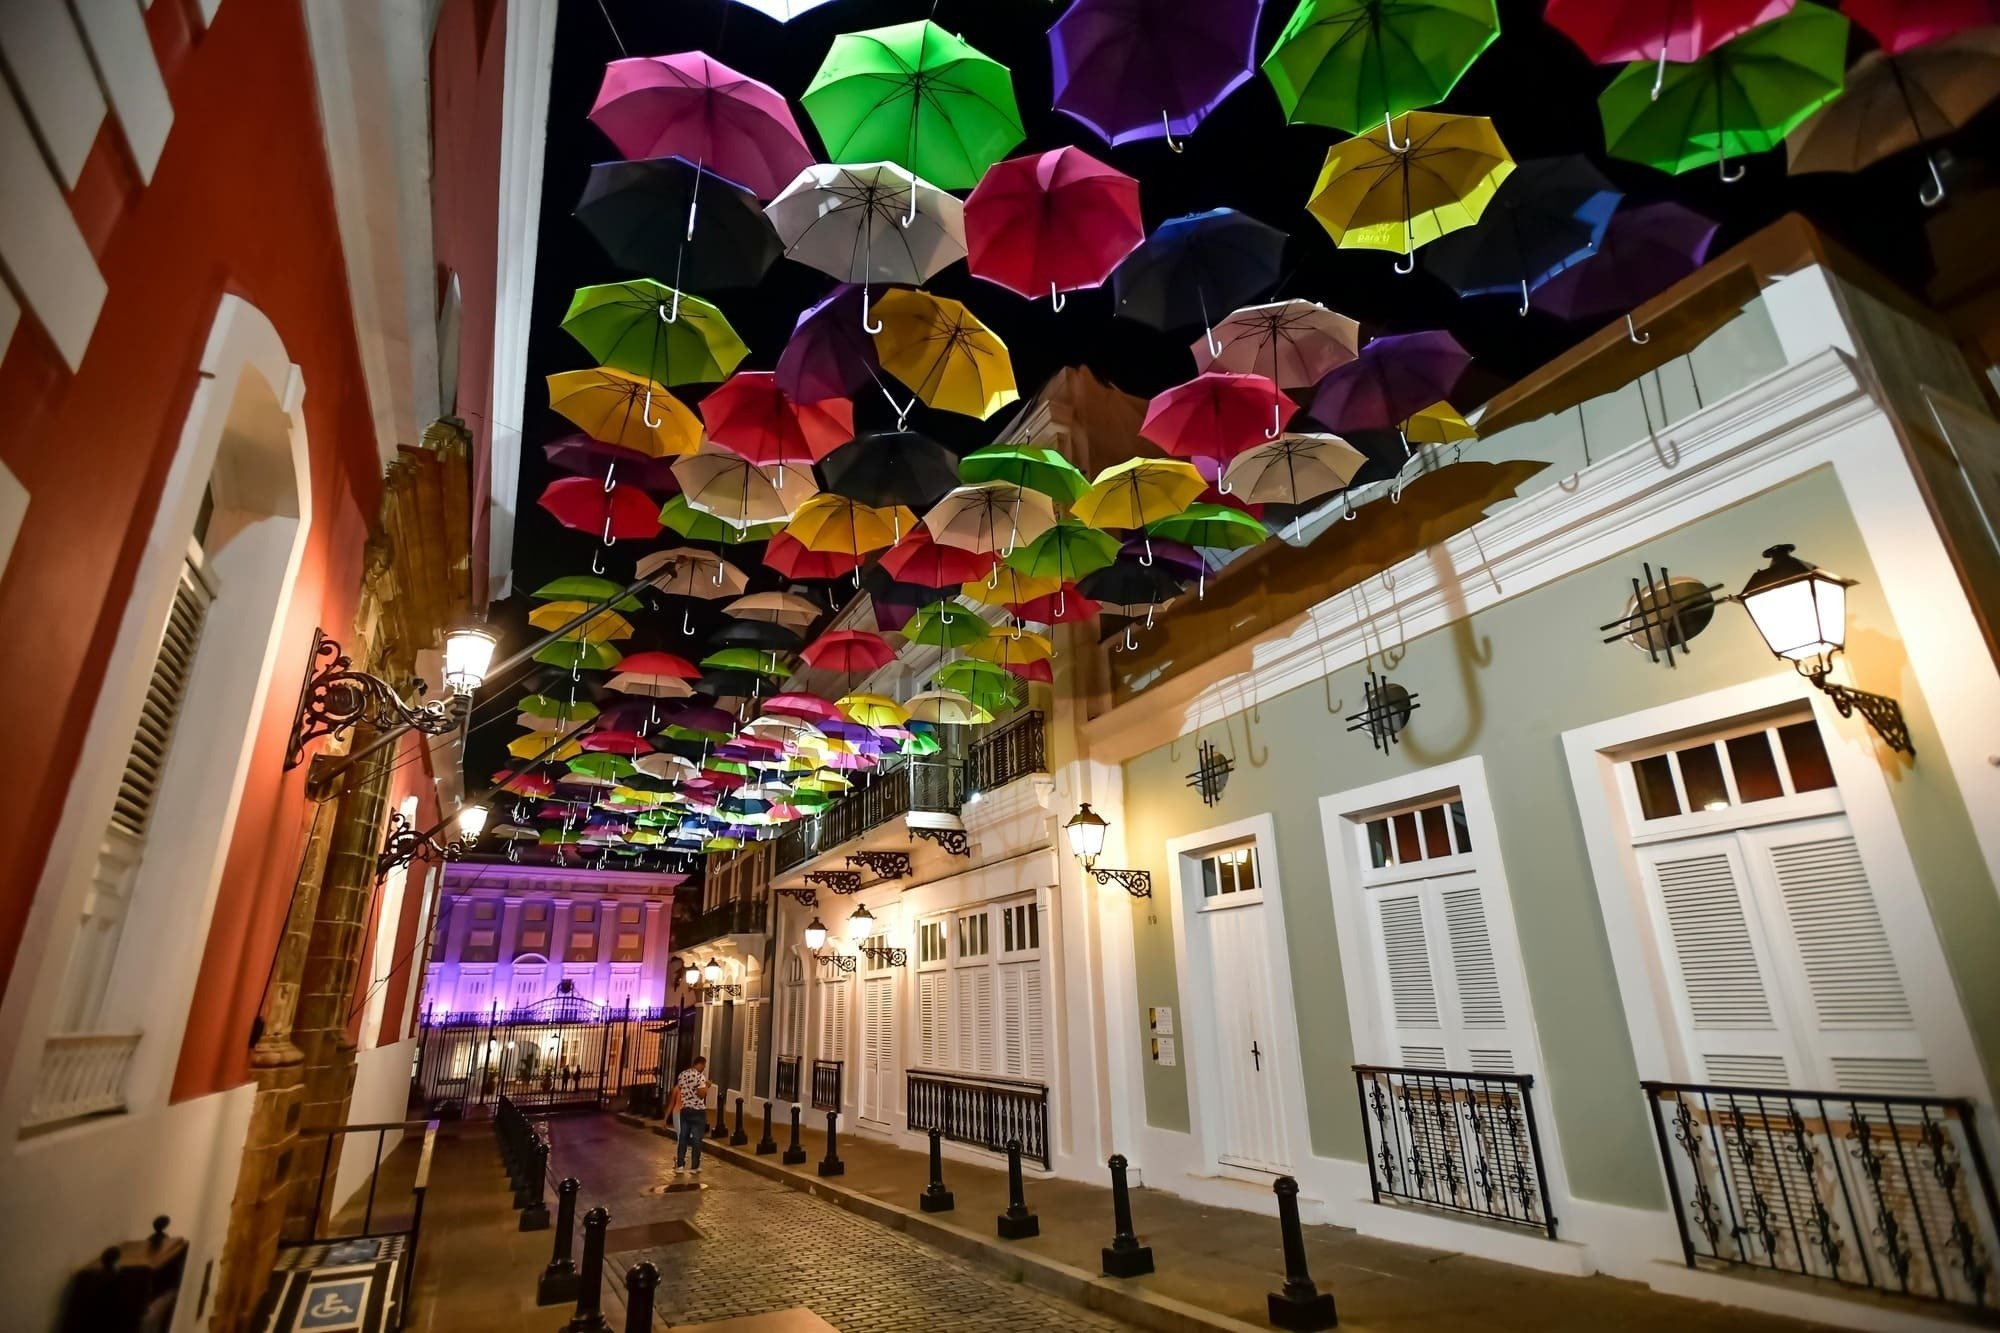 guarda-chuvas coloridos estão pendurados no teto de uma rua